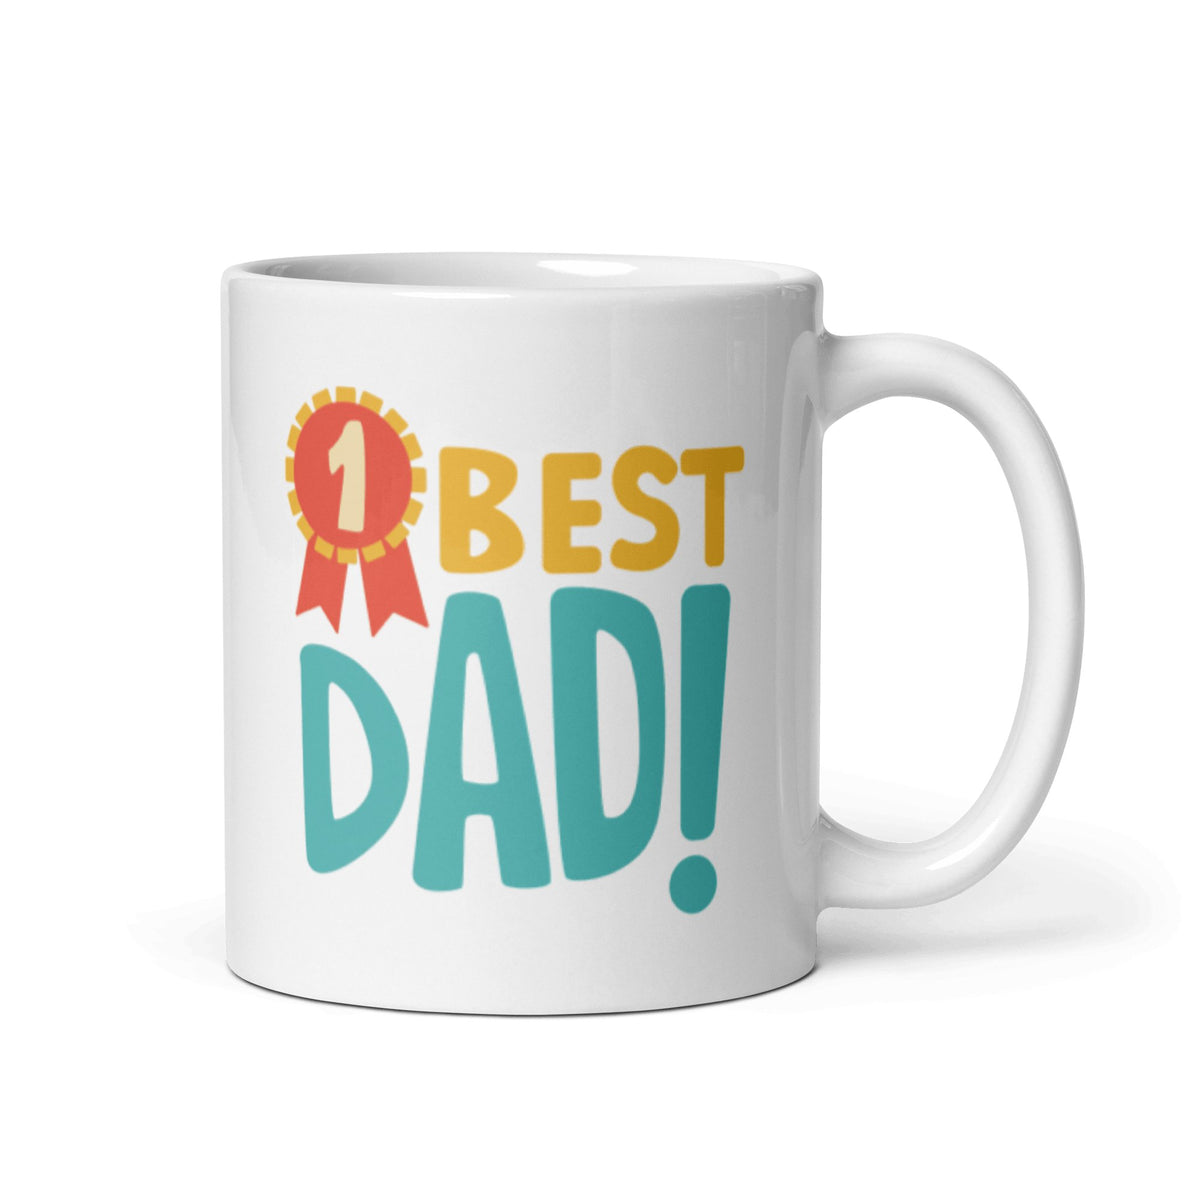 #1 Best Dad Mug 11 oz Coffee Mug - Eventwisecreations